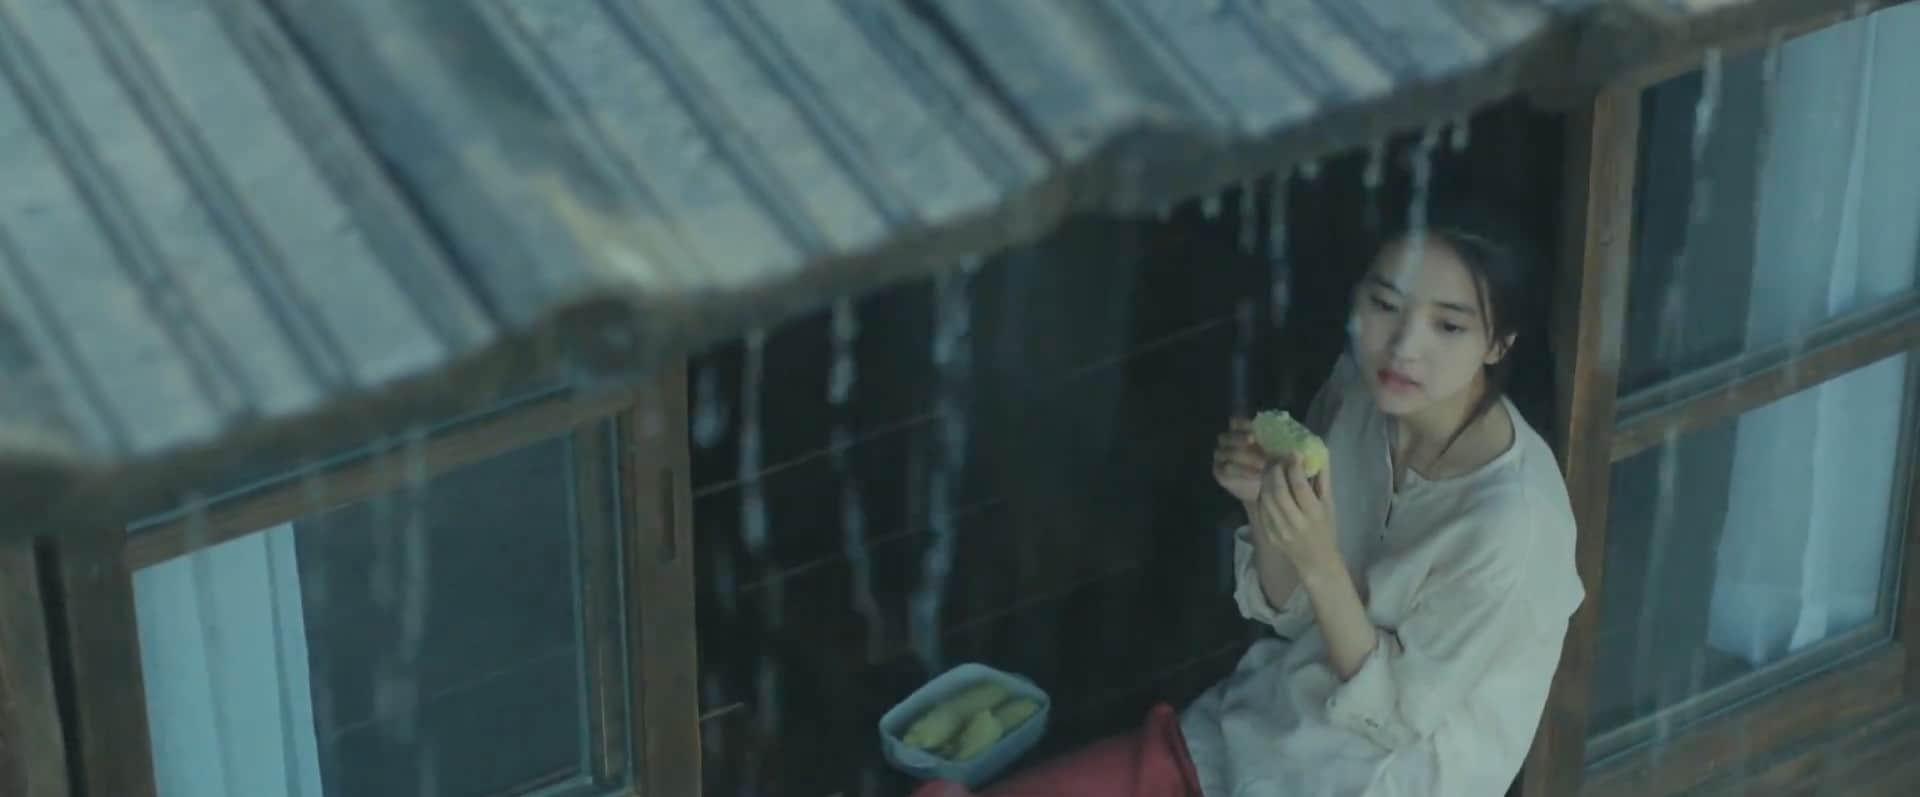 Little Forest: recensione del film coreano sulla riscoperta di sé stessi